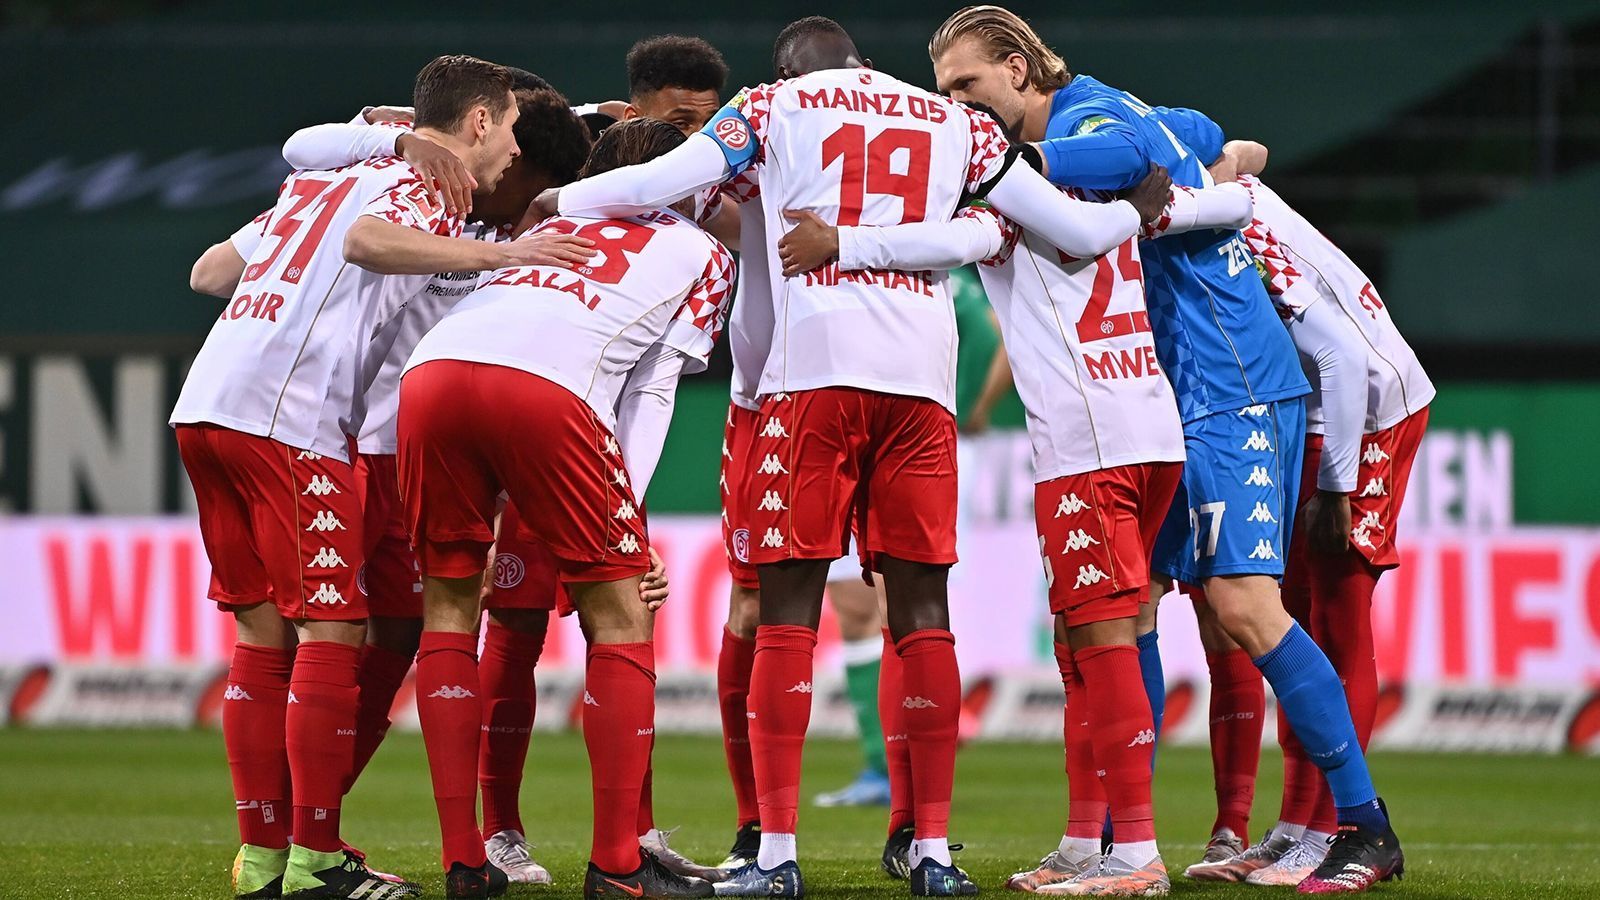 
                <strong>1. FSV Mainz 05 (2020/21)</strong><br>
                "Extremst abstiegsbedroht" – so hätte das Urteil über den 1. FSV Mainz 05 beim Blick auf die Tabelle der Hinrunde in der Saison 2020/21 lauten können. Nur sieben Punkte auf dem Konto, Platz 17 und schon acht Punkte Rückstand auf den Relegationsplatz verhießen nichts Gutes. Im Januar übernahm Bo Svensson das Ruder in Mainz und legte mit seiner neuen Mannschaft in der Rückrunde eine unfassbare Aufholjagd hin, die ihm kaum jemand zugetraut hatte. Die Mainzer holten neun Siege, drei Unentschieden und konnten dadurch schon vorzeitig den Klassenerhalt feiern. Die Saison schlossen sie mit Rang 12 ab. Betrachtet man nur die Tabelle der Rückrunde, standen sie dort sogar auf Tabellenplatz fünf zwischen dem VfL Wolfsburg und RB Leipzig.
              